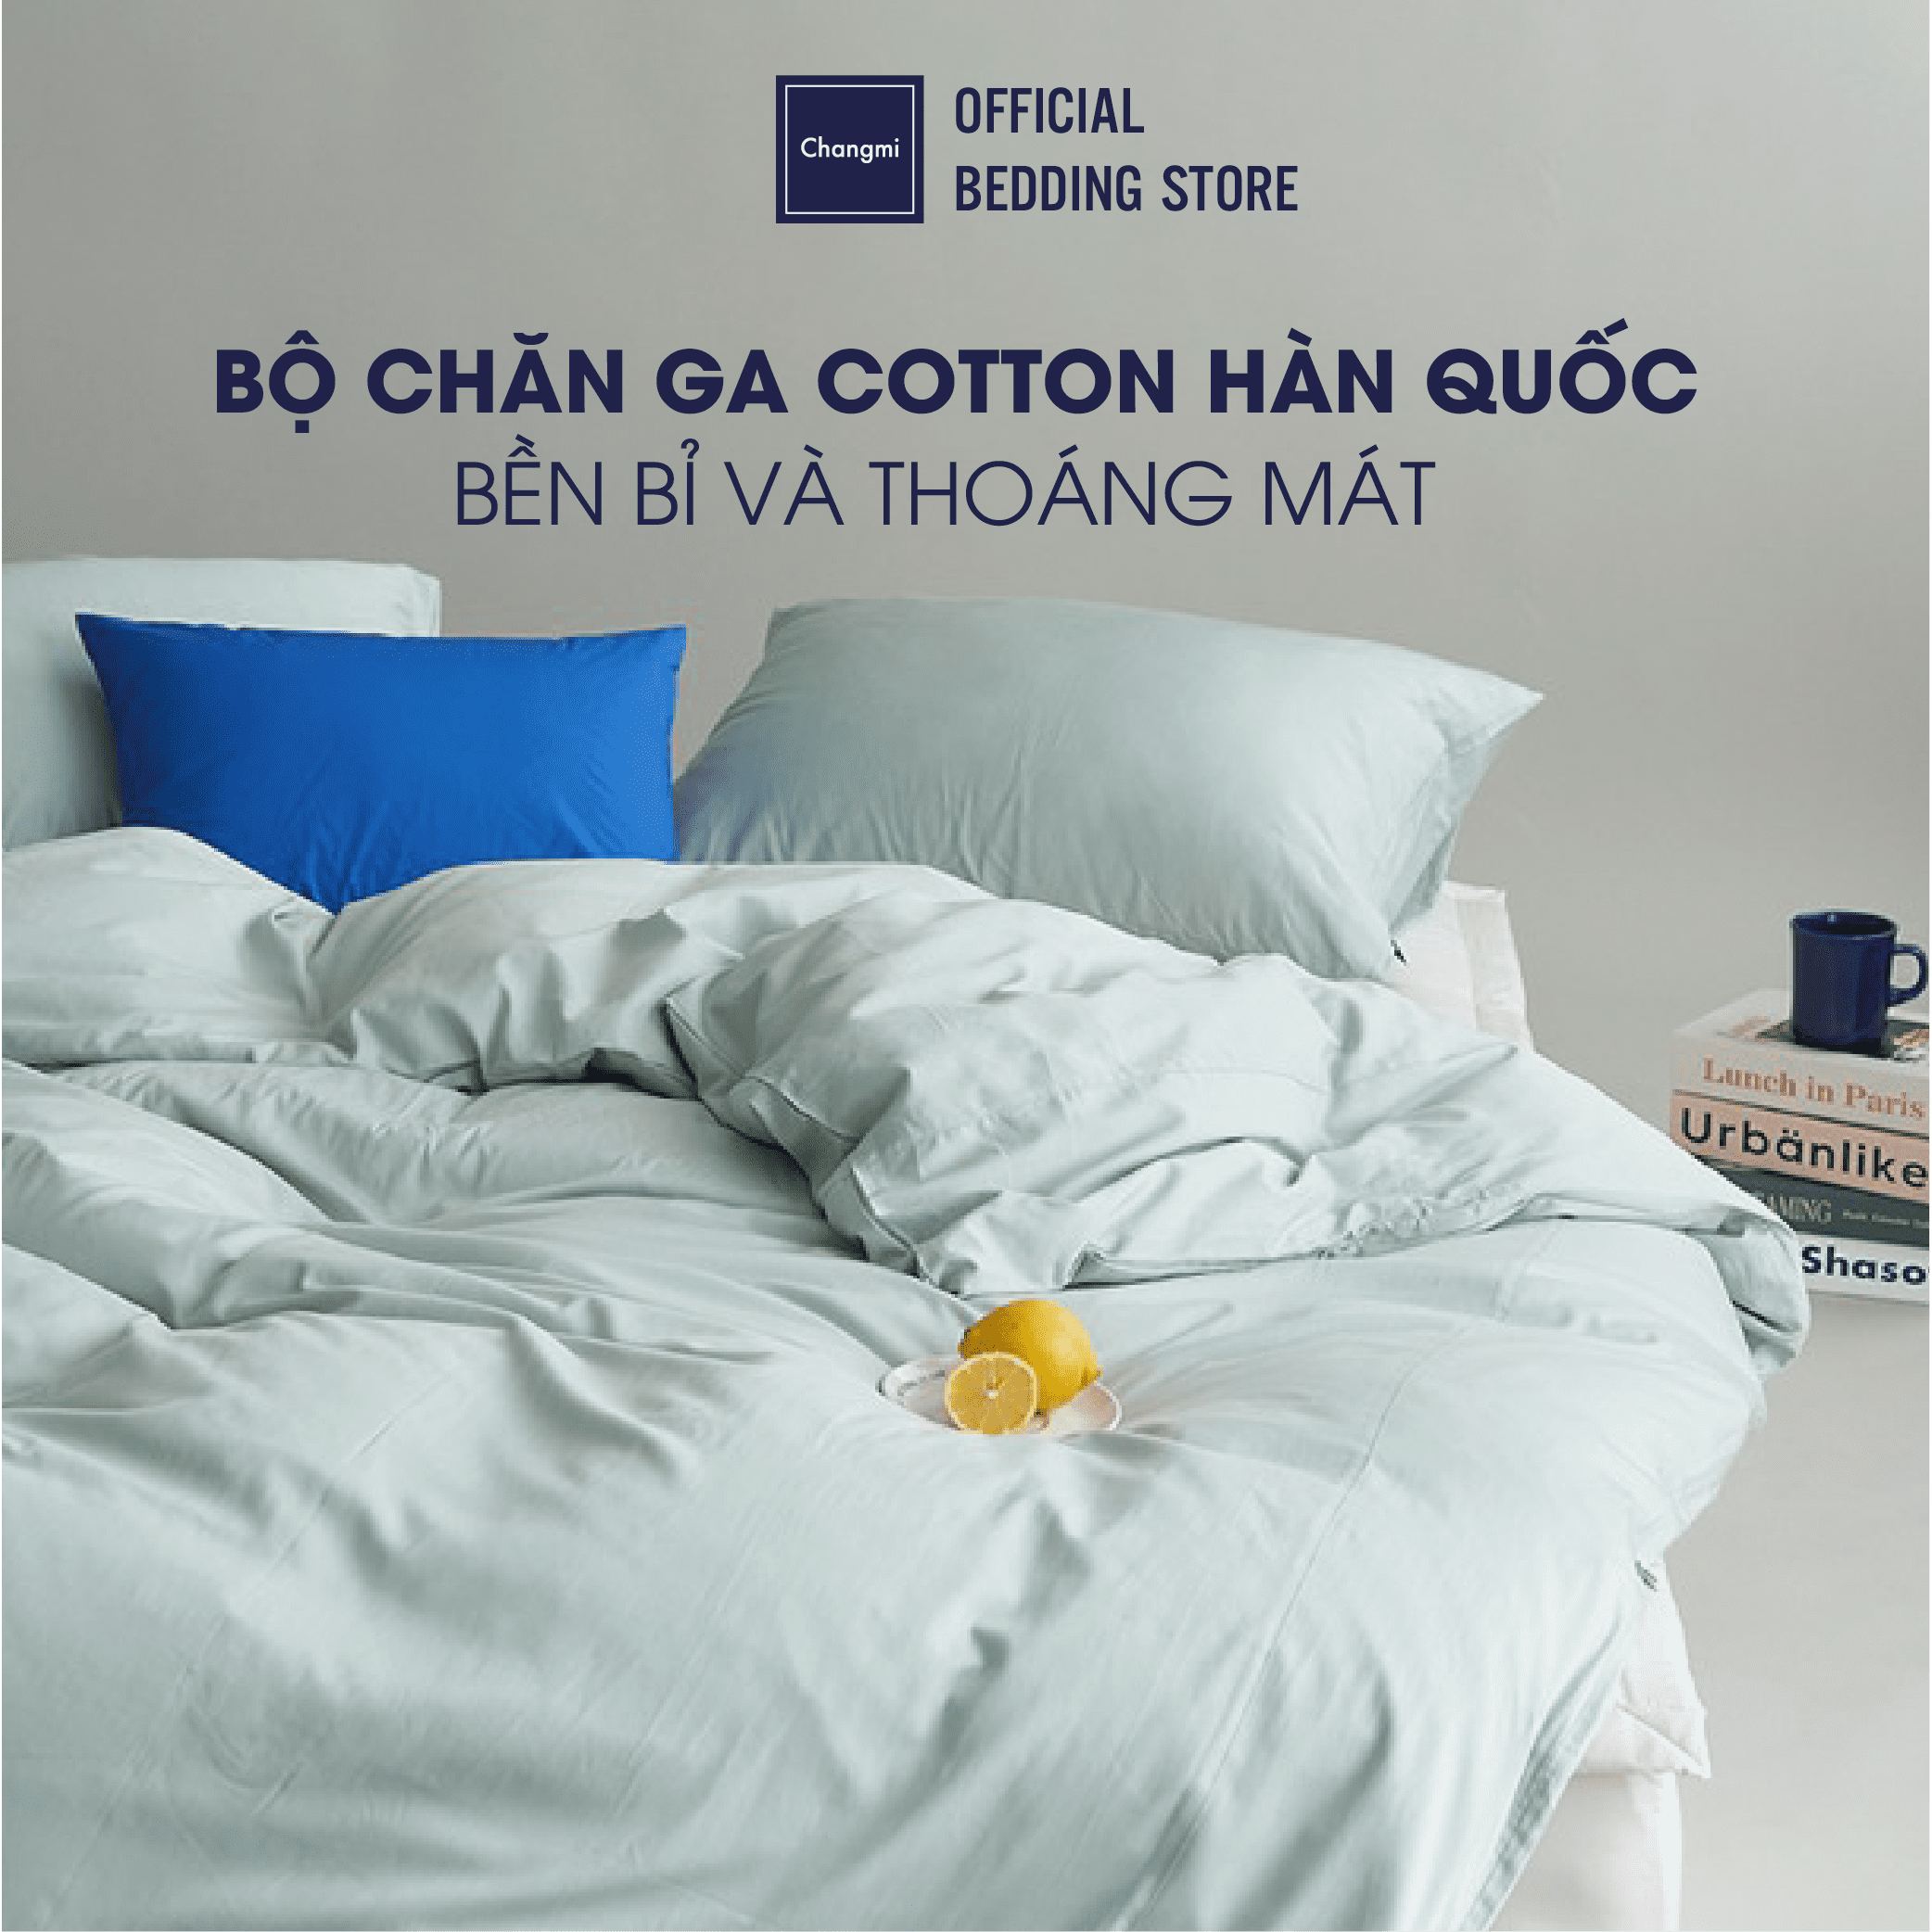 Bộ chăn ga 100% Cotton Sateen Cao Cấp Hàn Quốc thoáng mát, siêu bền